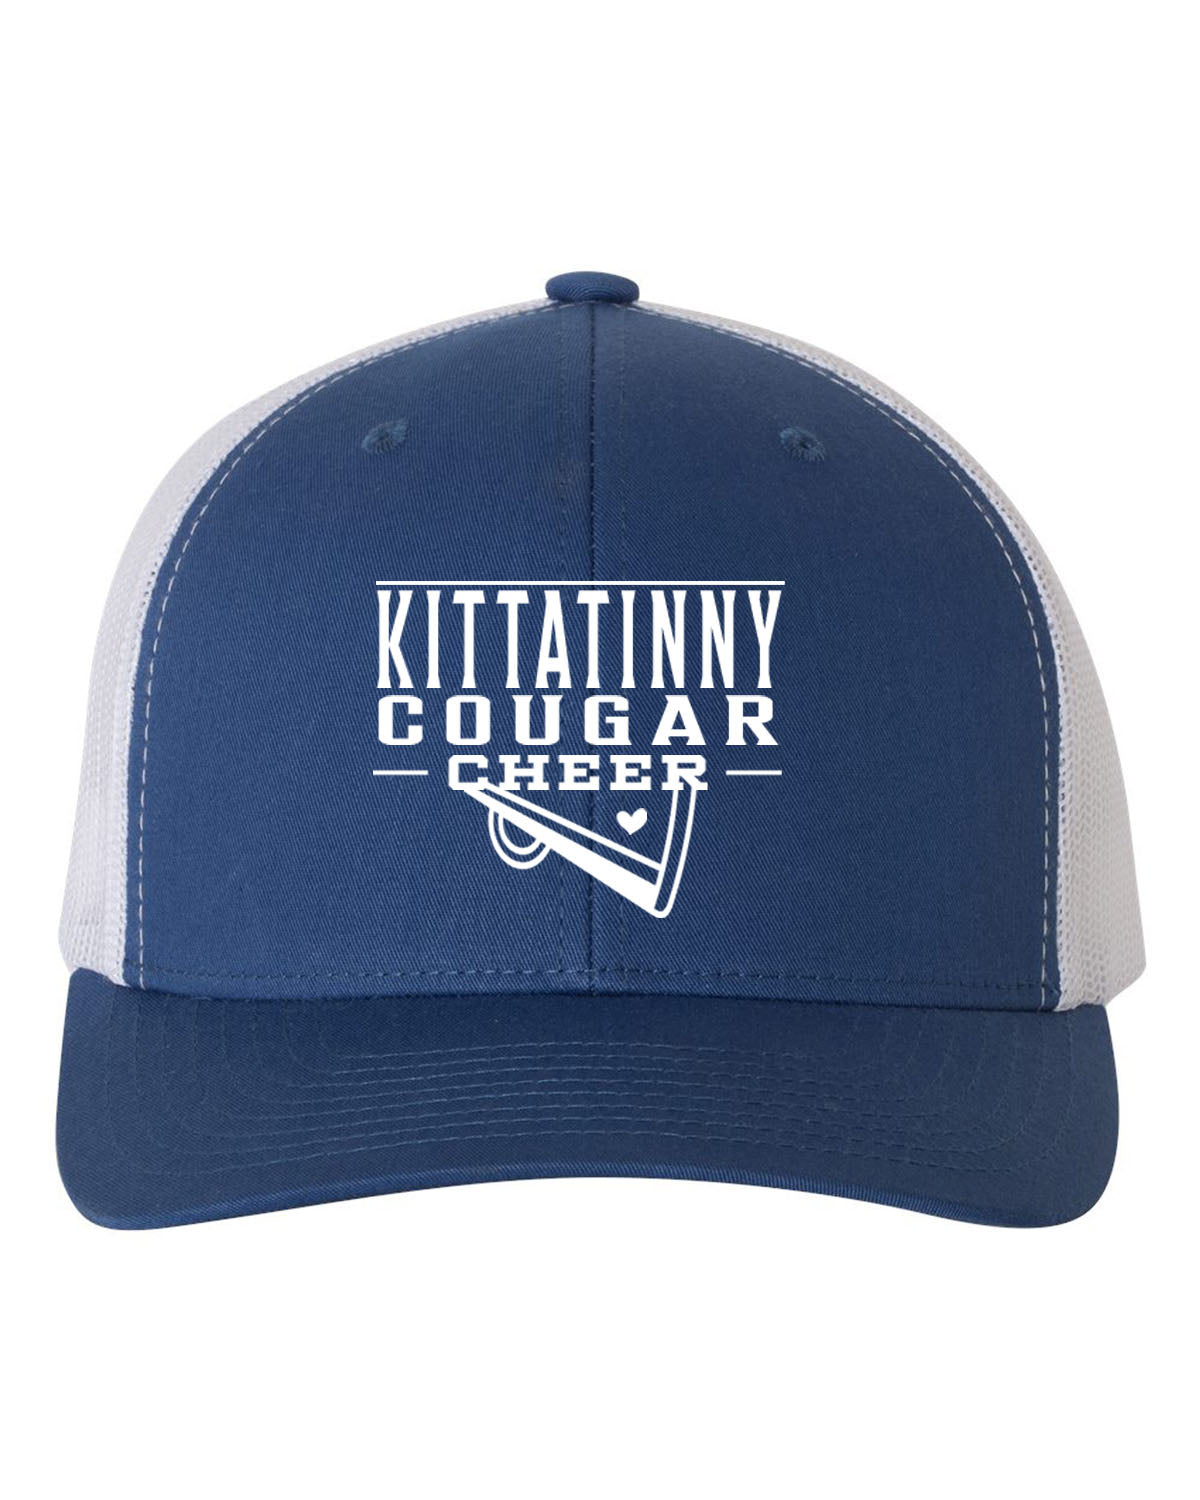 Kittatinny Cheer Design 11 Trucker Hat